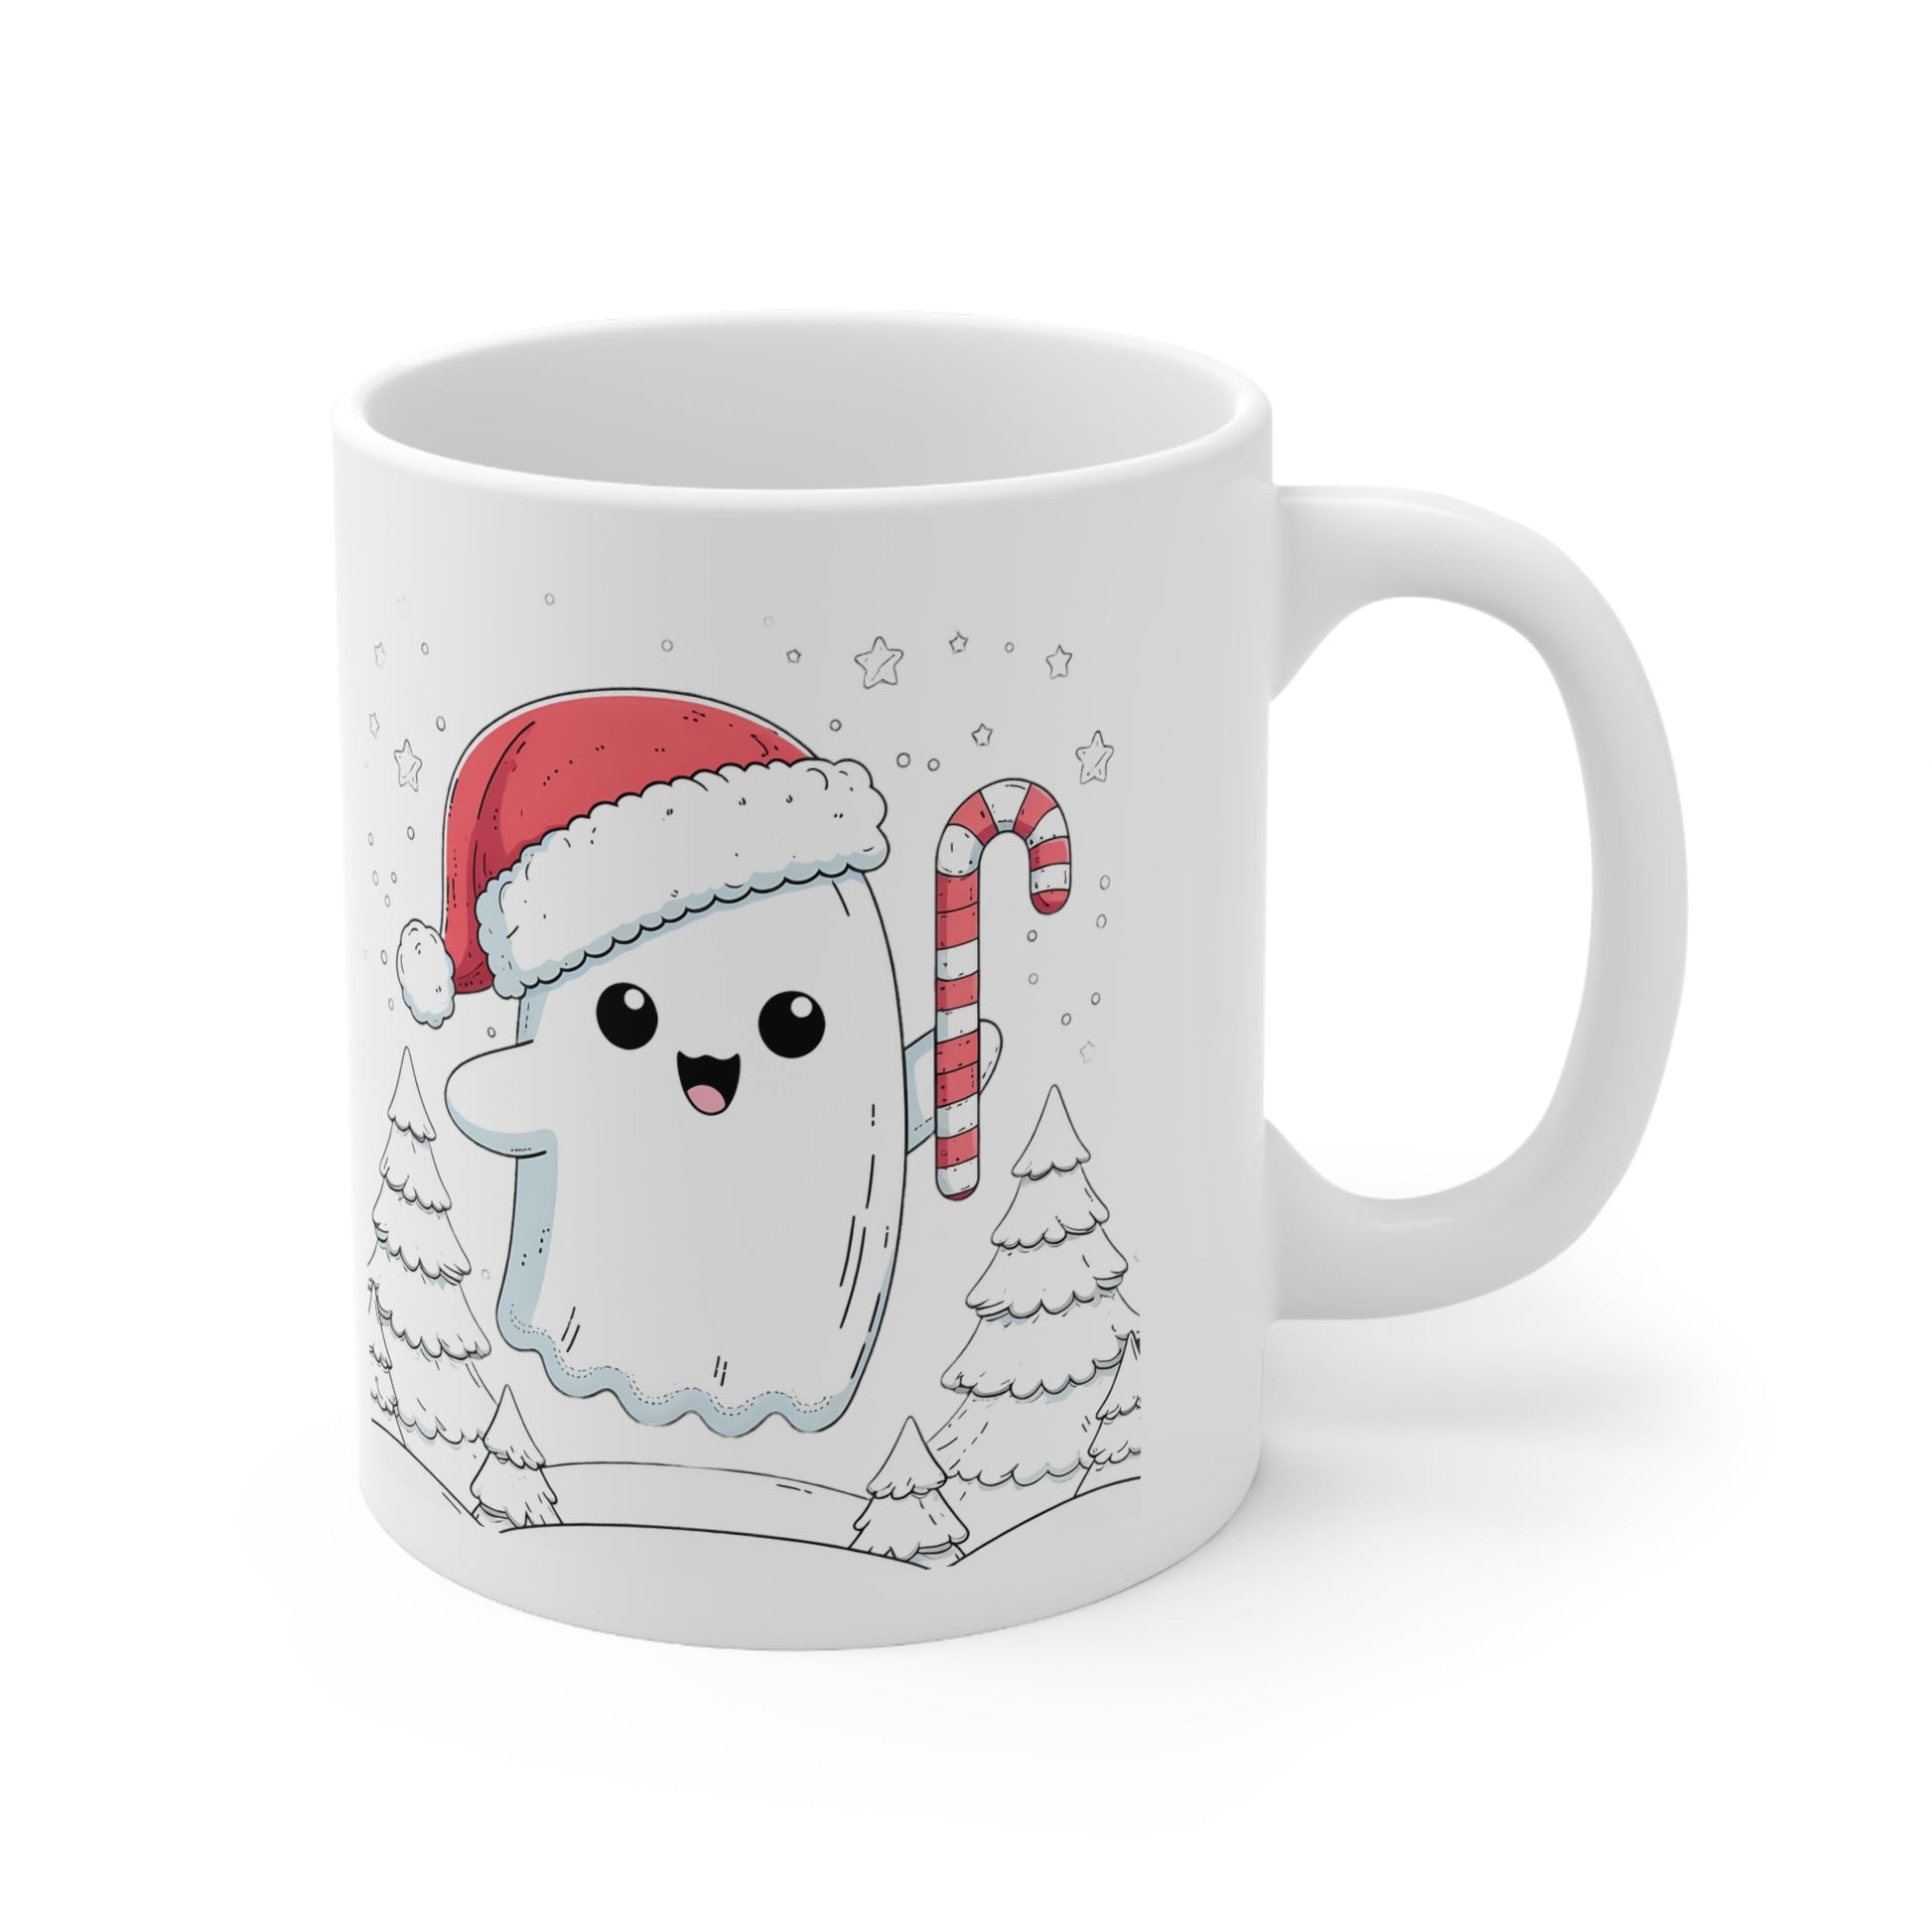 Cute Christmas Ghost Ceramic Mug 11ozMugVTZdesigns11oz11ozcandy canechristmas